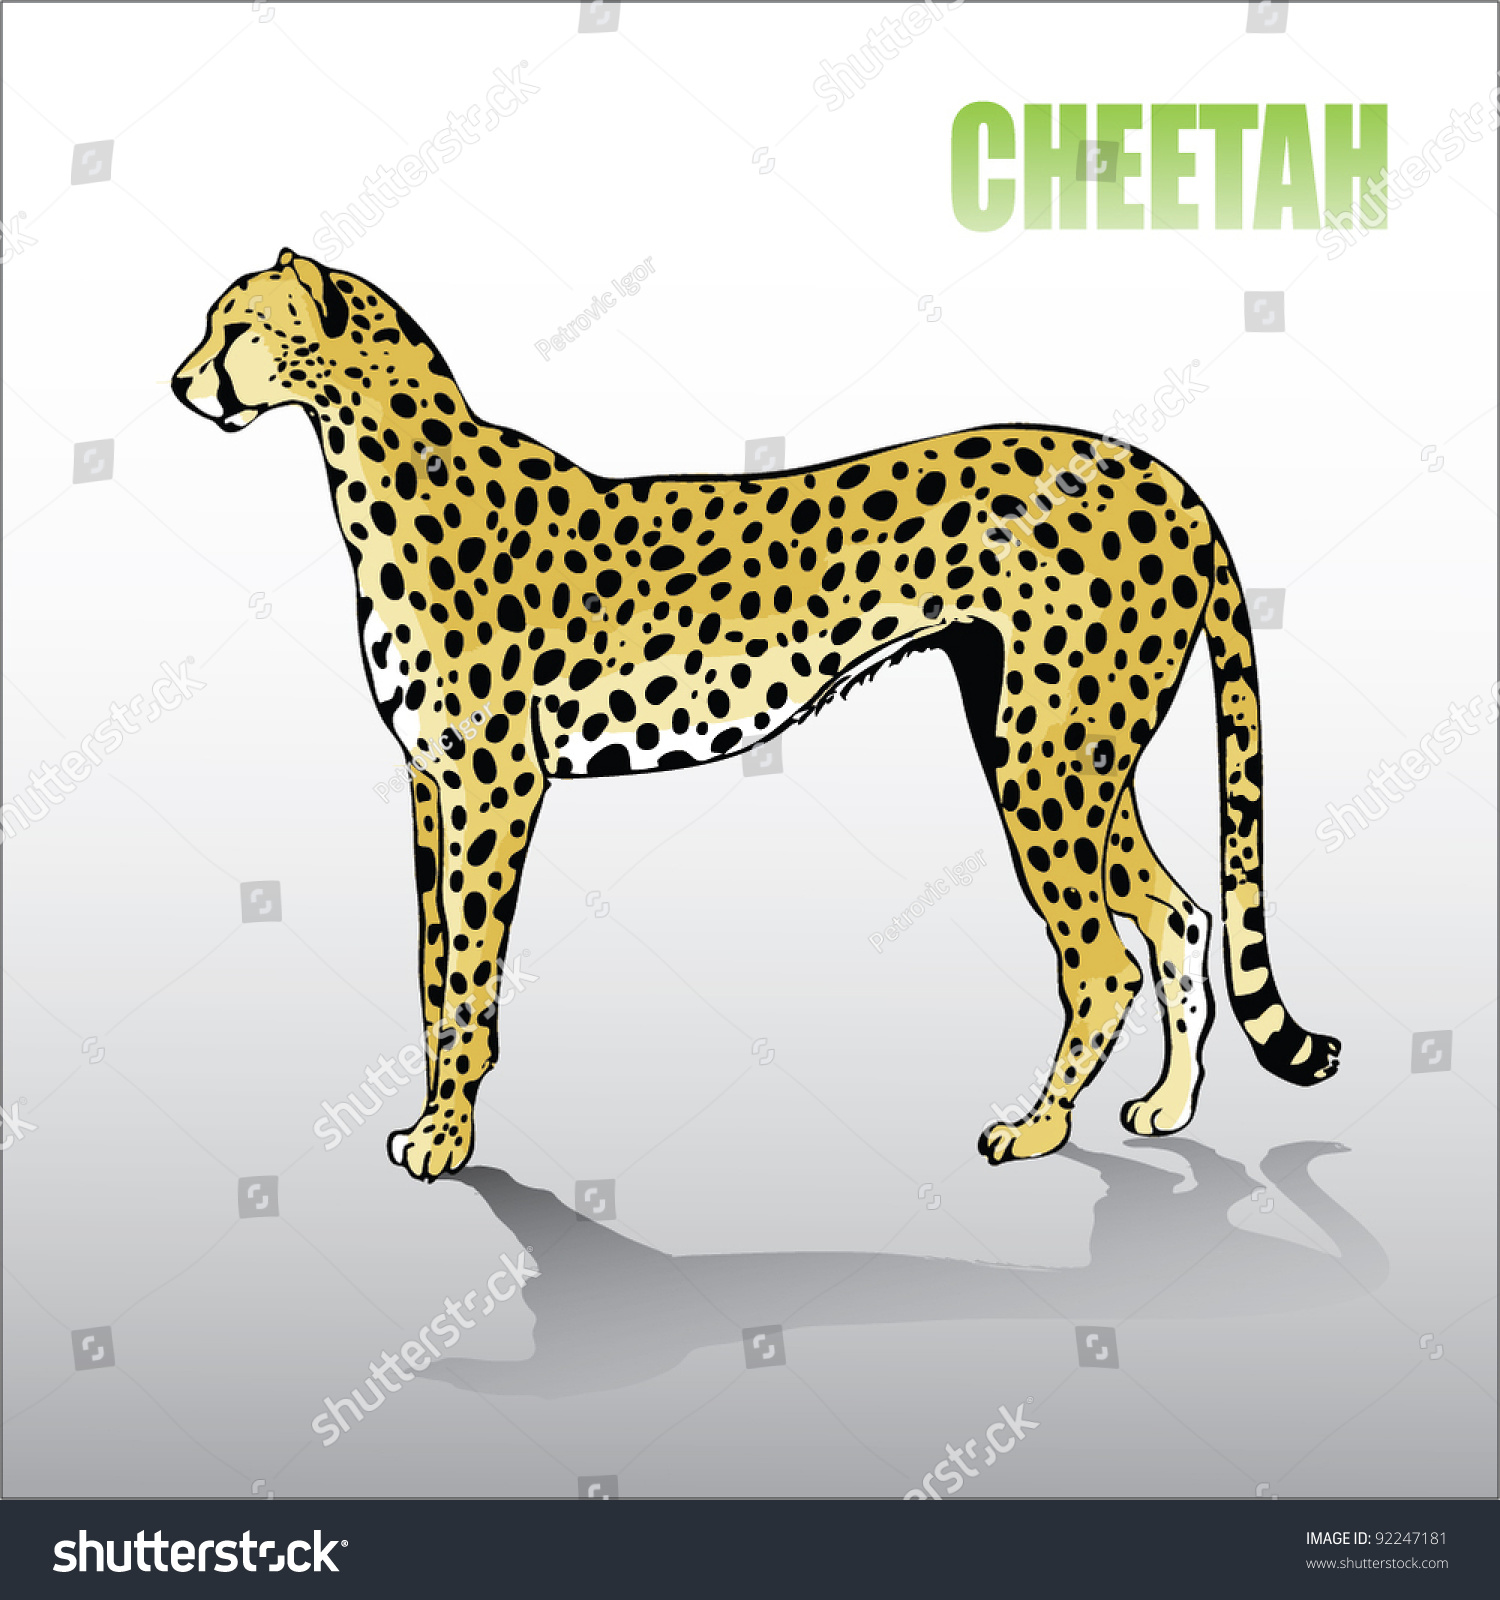 Очертания гепарда на желтом фоне